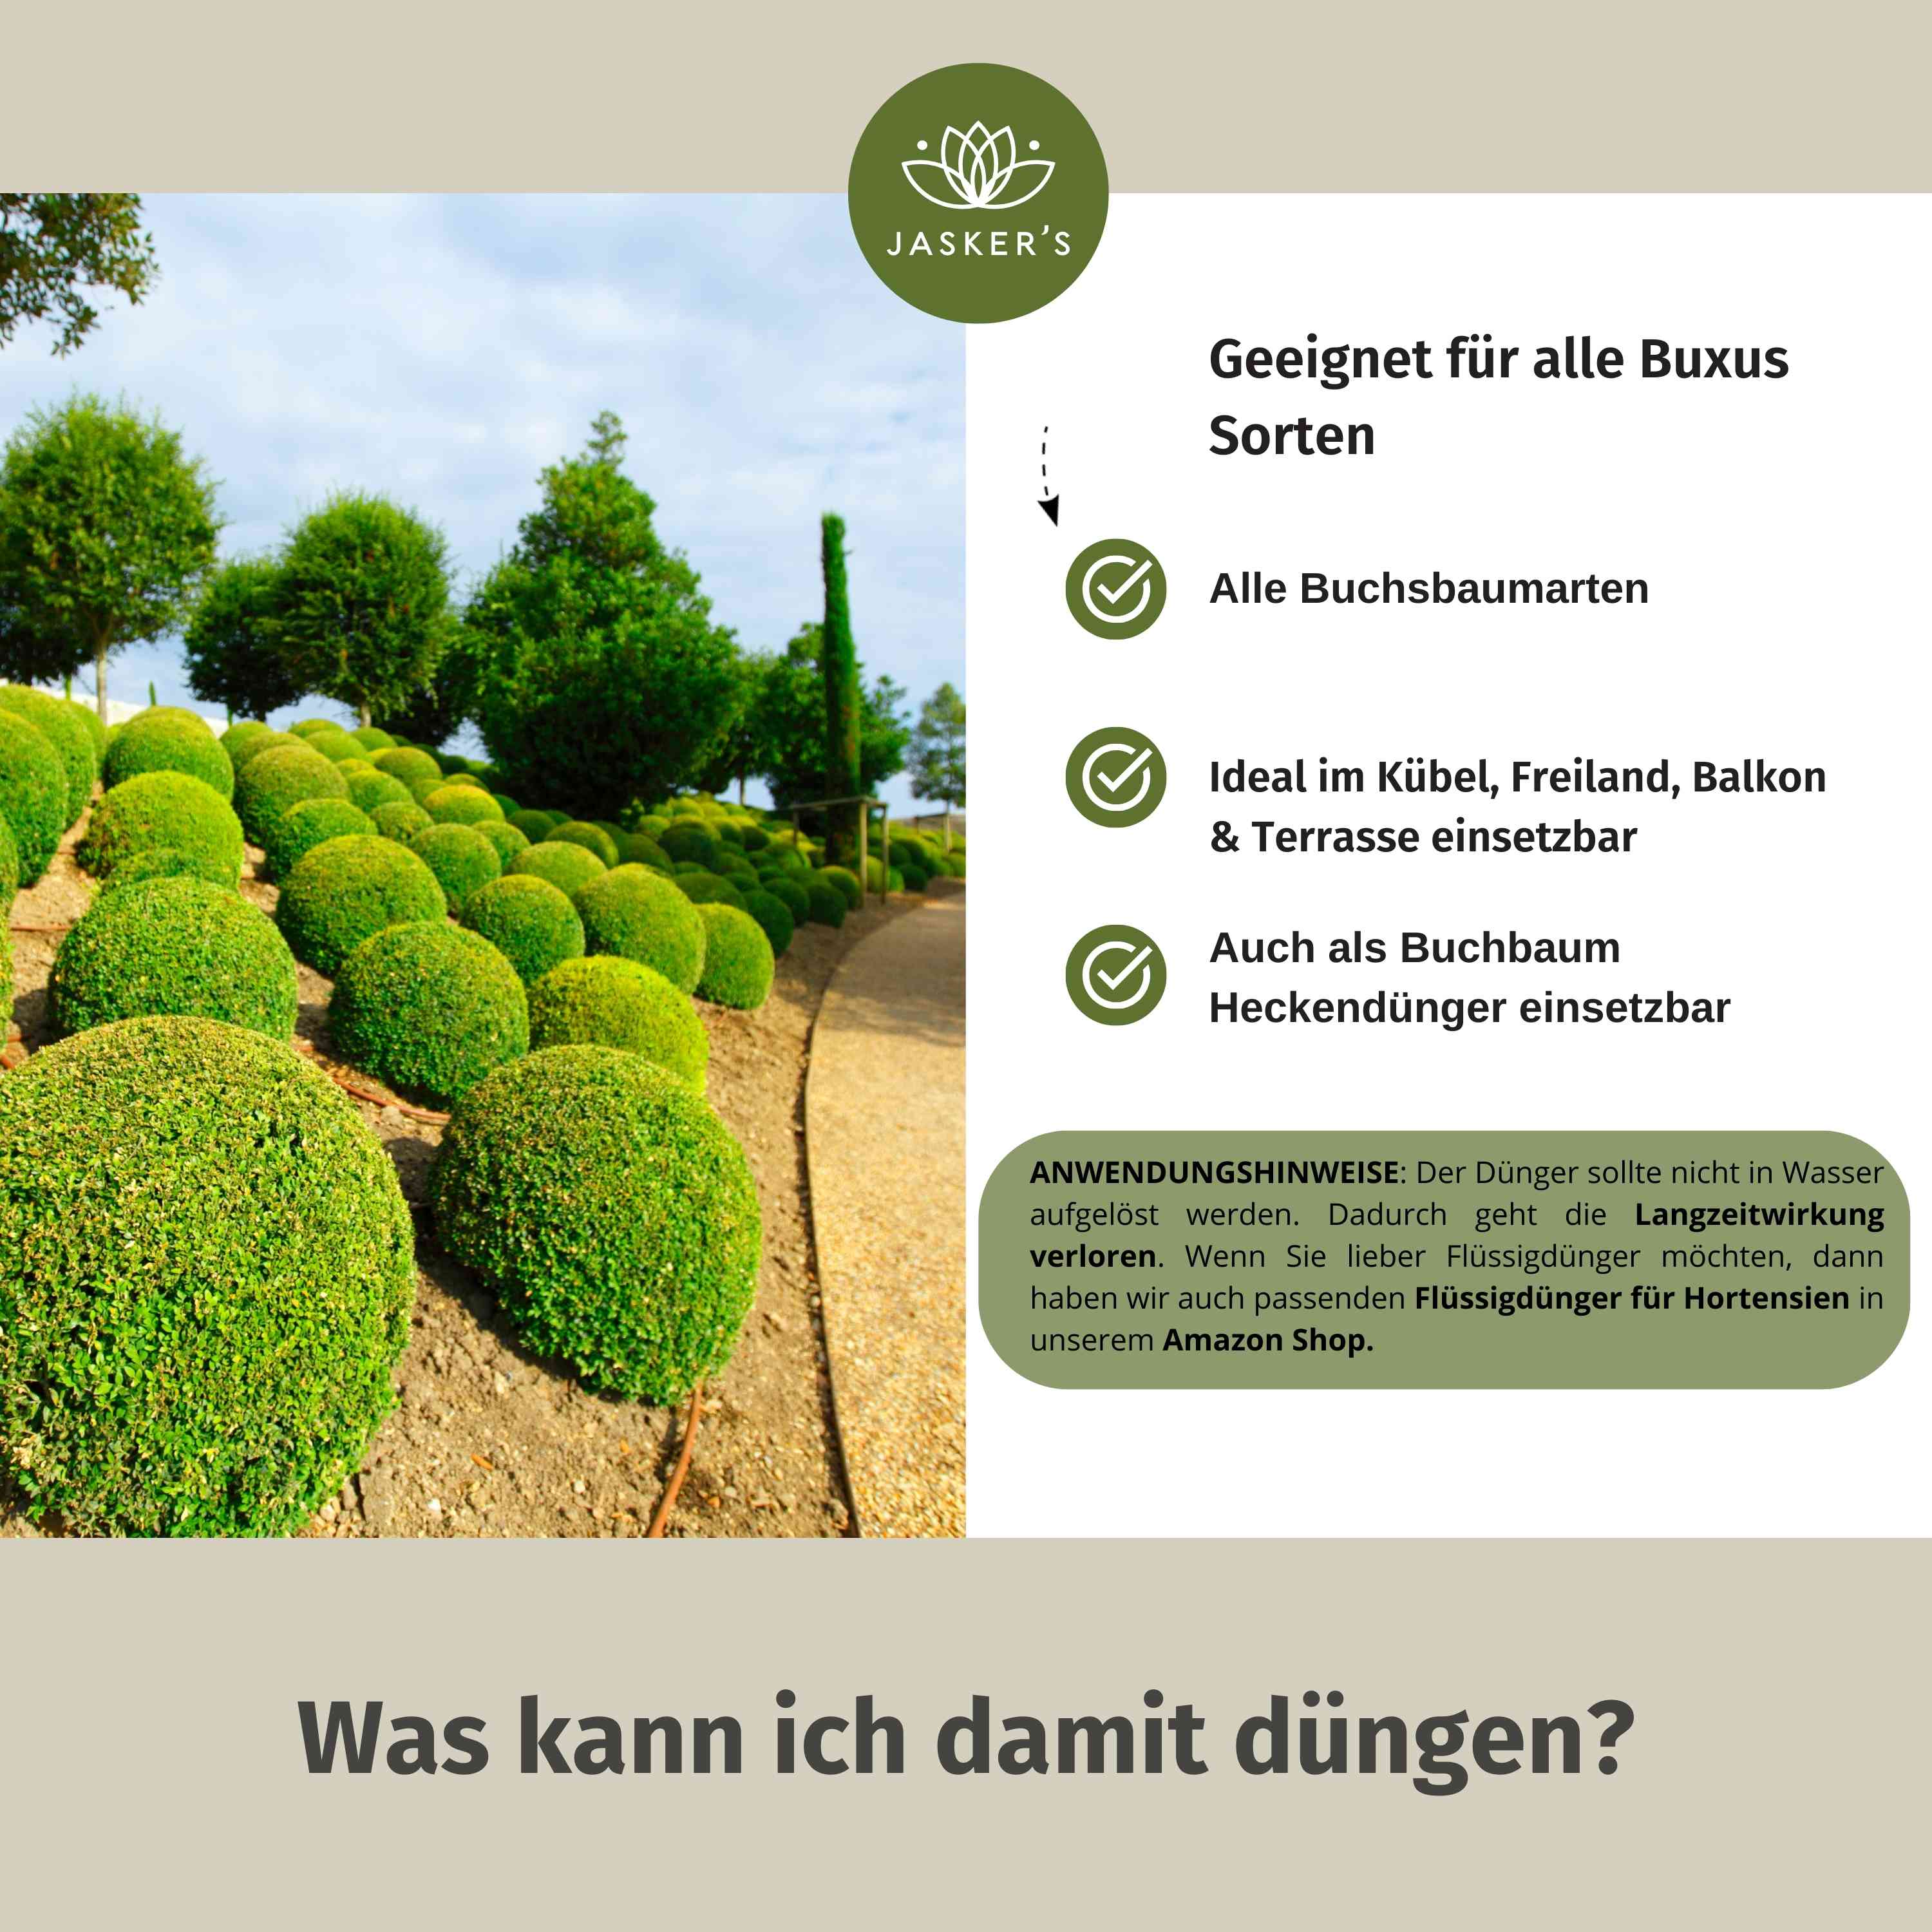 Buchsbaum Dünger 20Kg | Langzeitdünger Für Frischgrünen Buxus